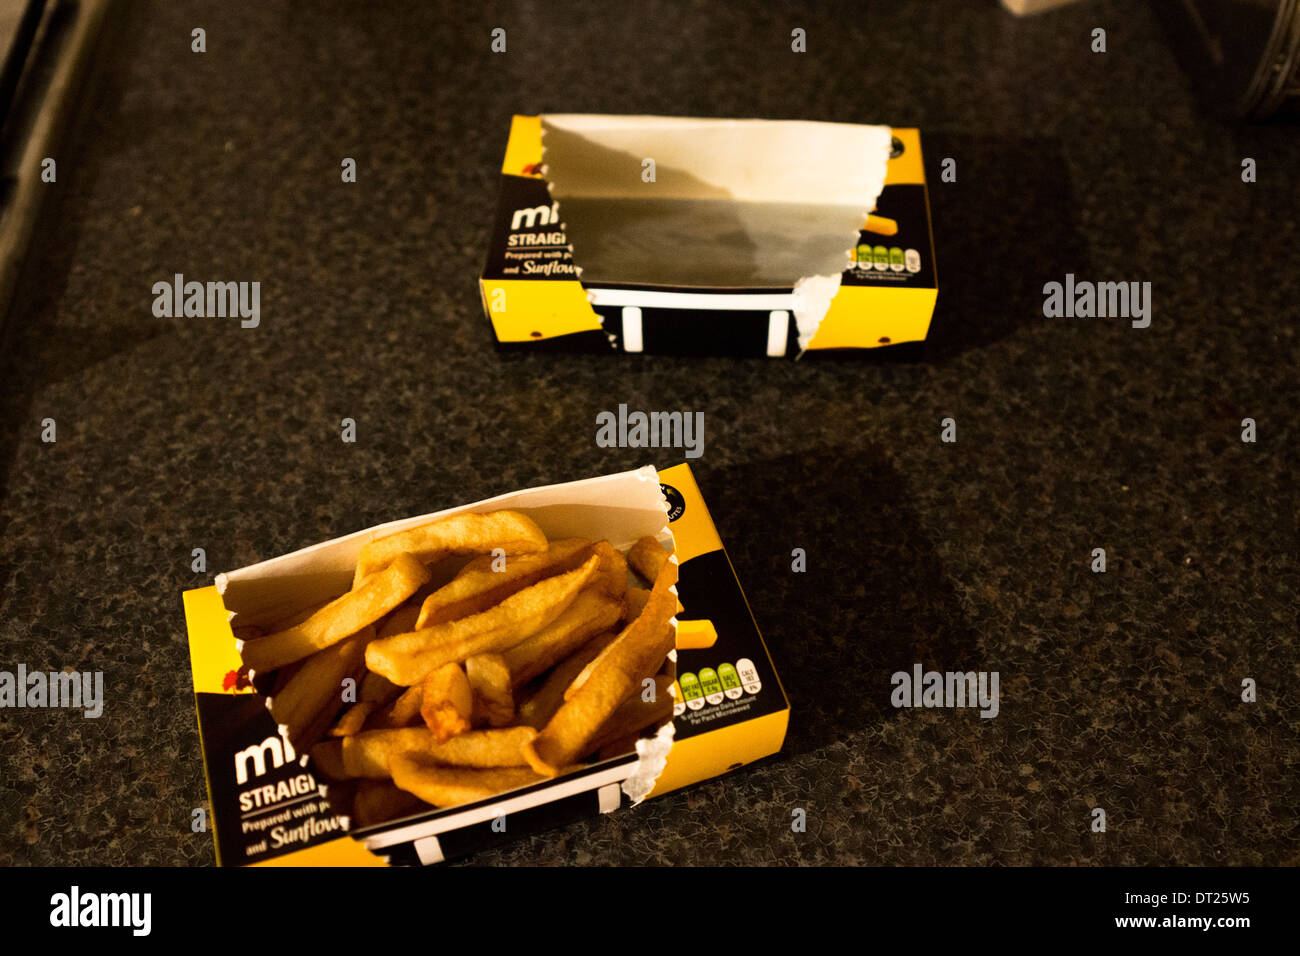 Patatine surgelate immagini e fotografie stock ad alta risoluzione - Alamy